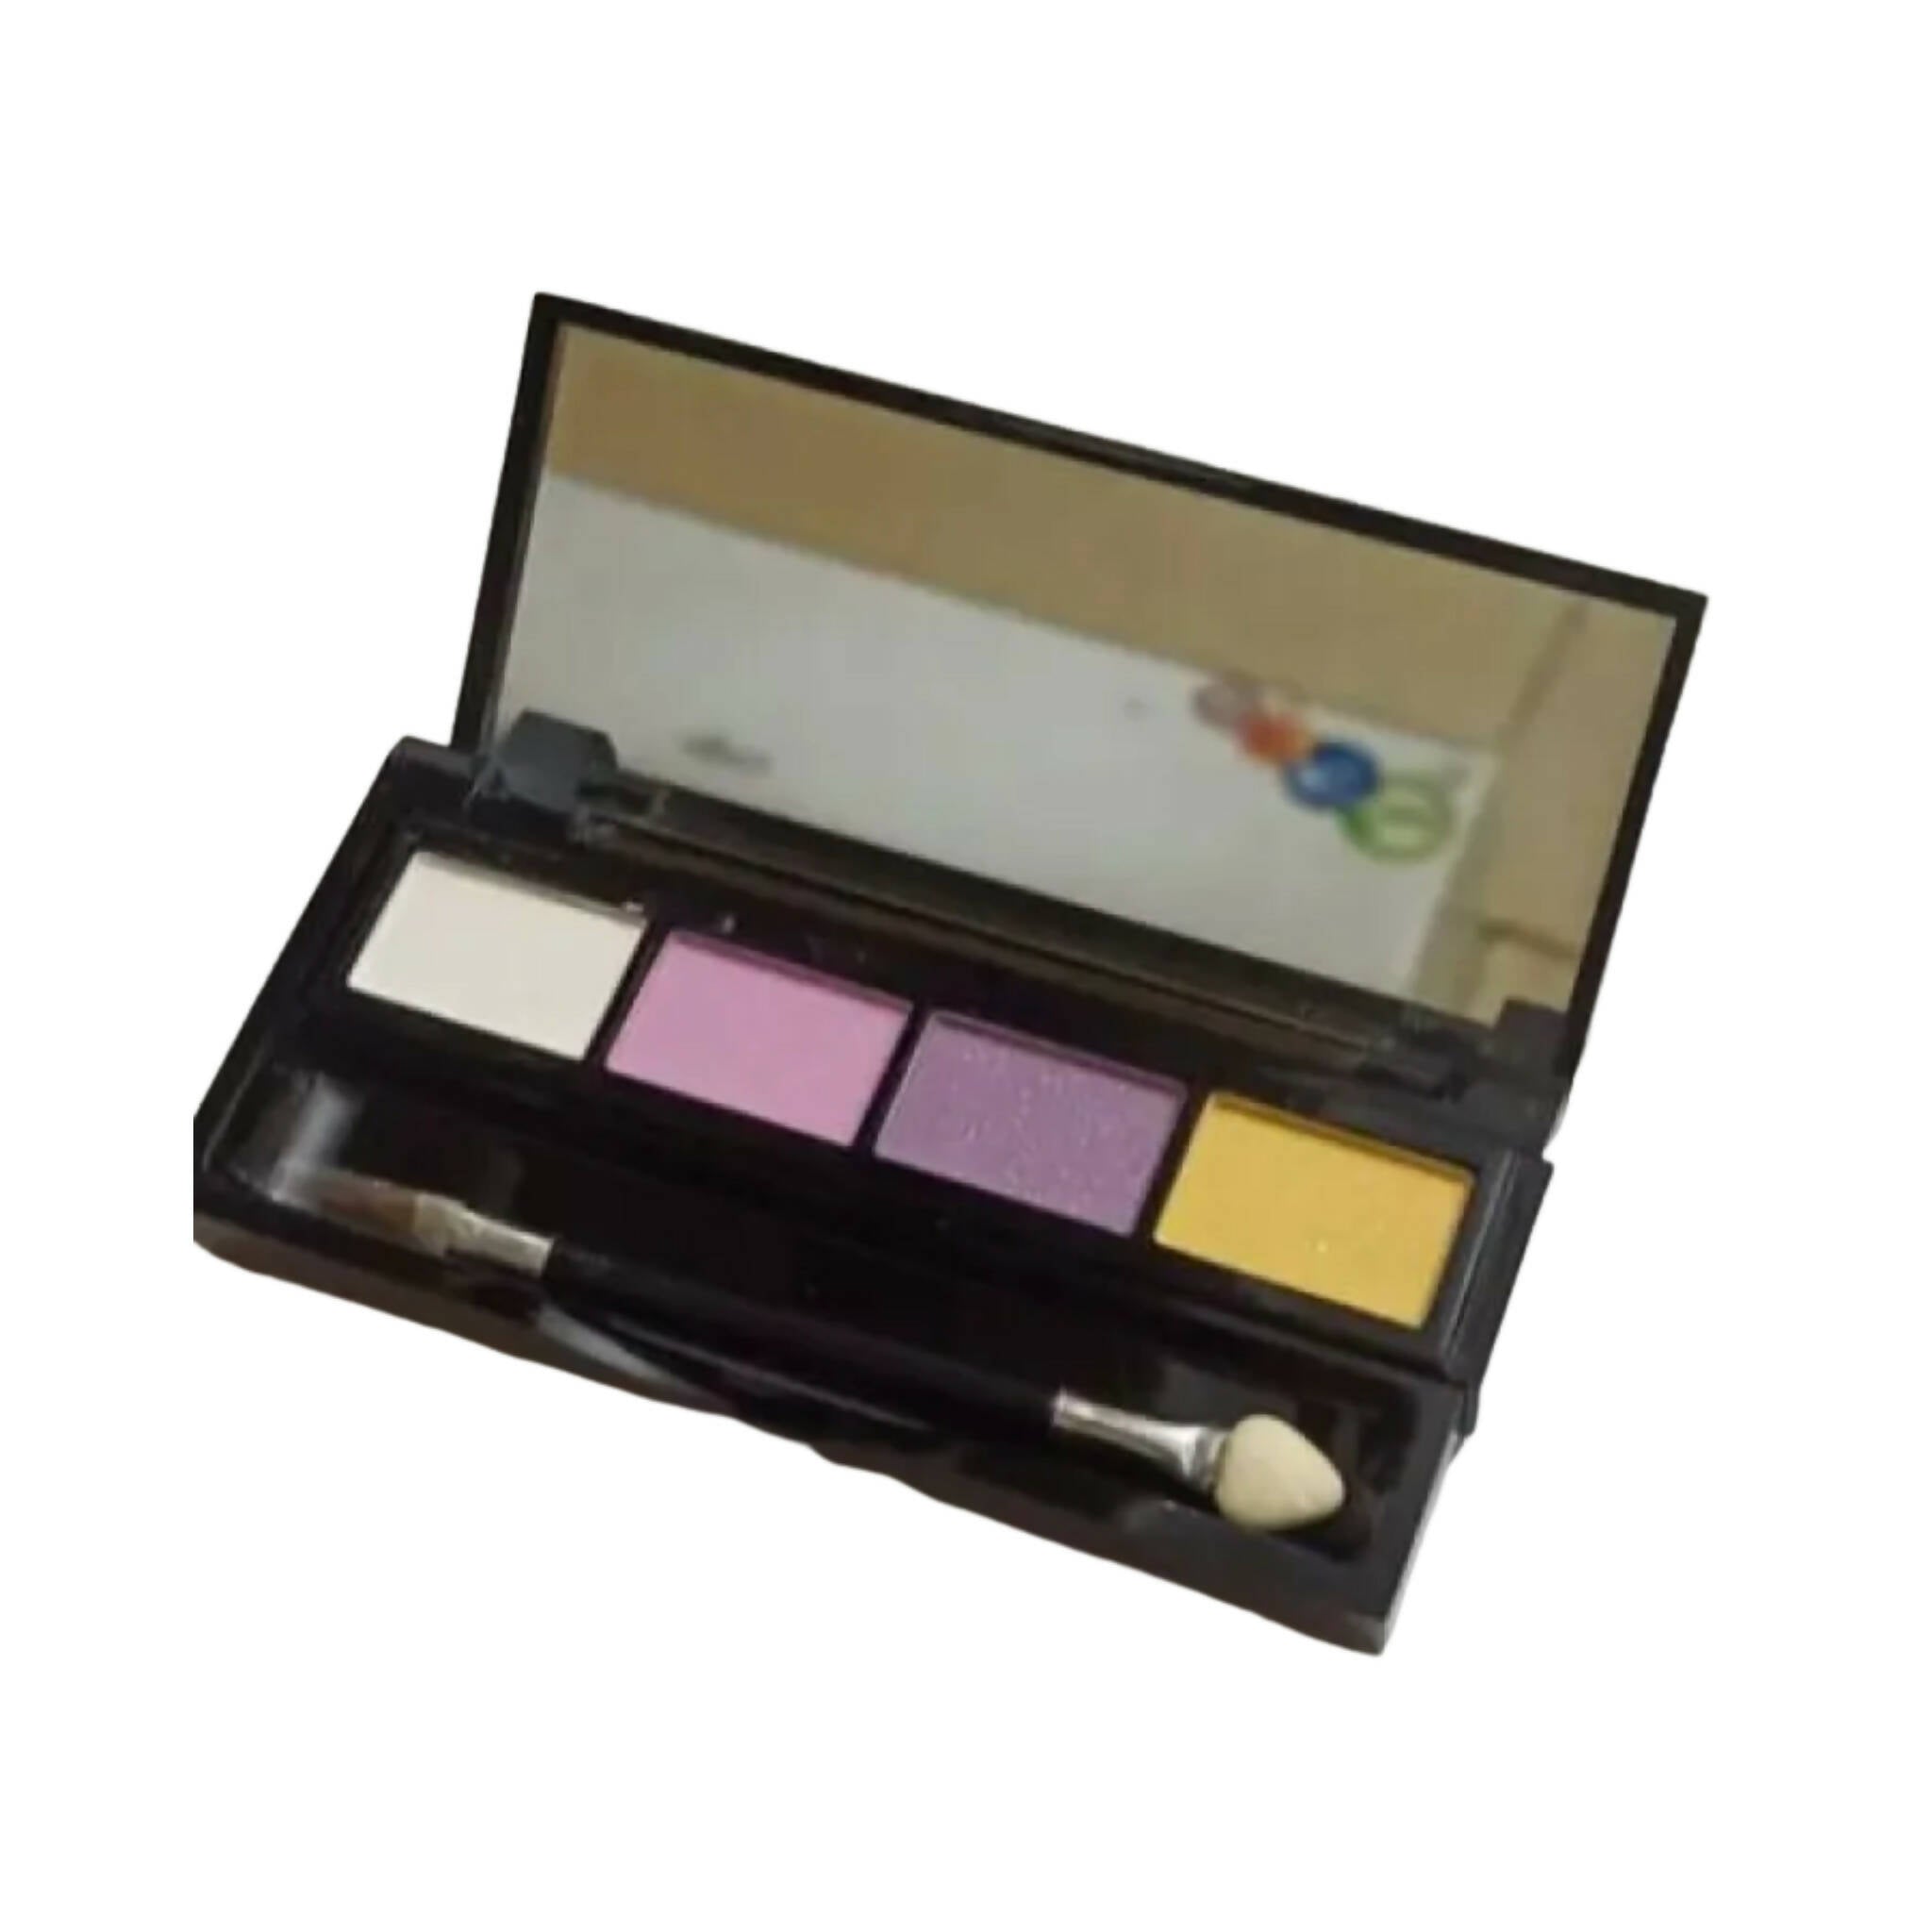 Lipsticks & Eyeshadow kit, Powdery and Creamy, for Women